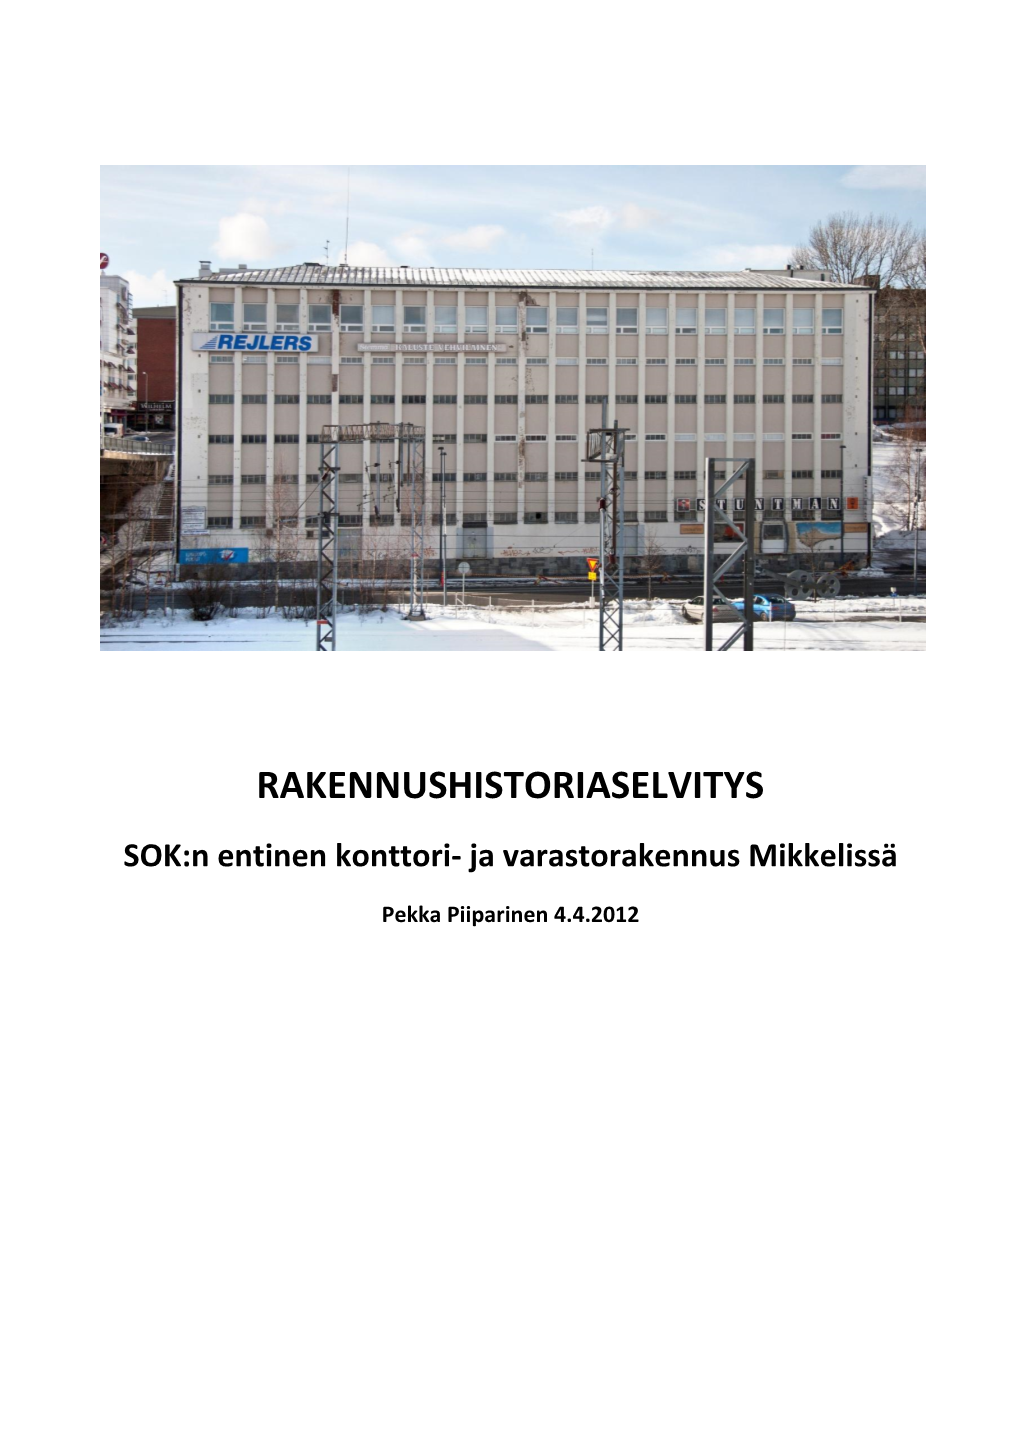 Rakennushistoriaselvitys: Mikkelin Entinen SOK:N Konttori